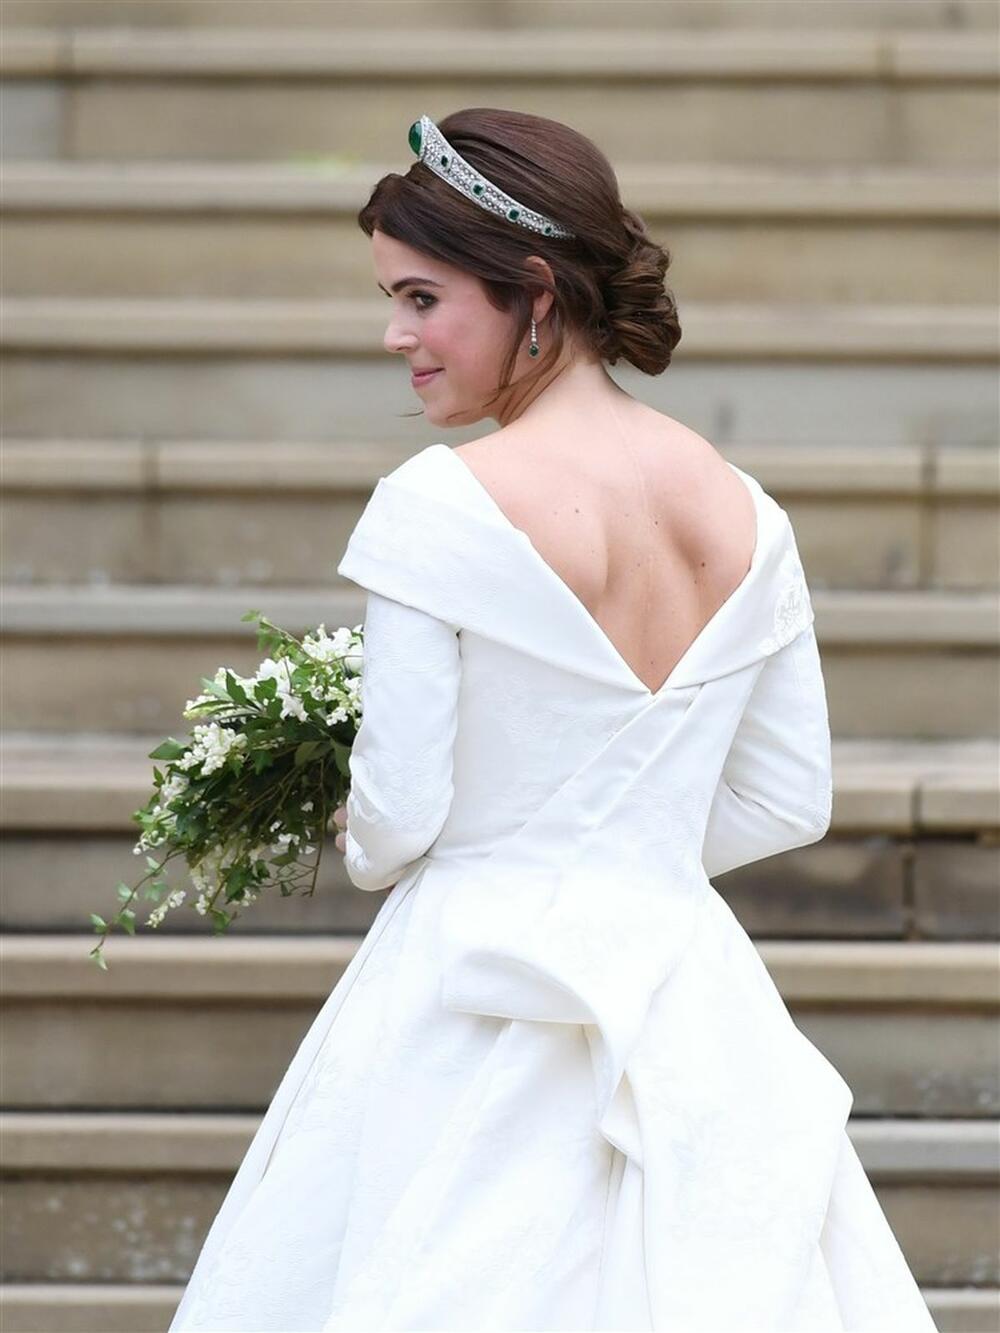 Princeza Eugenija od Jorka udala se 2018. godine za biznismena Džeka Bruksbenka